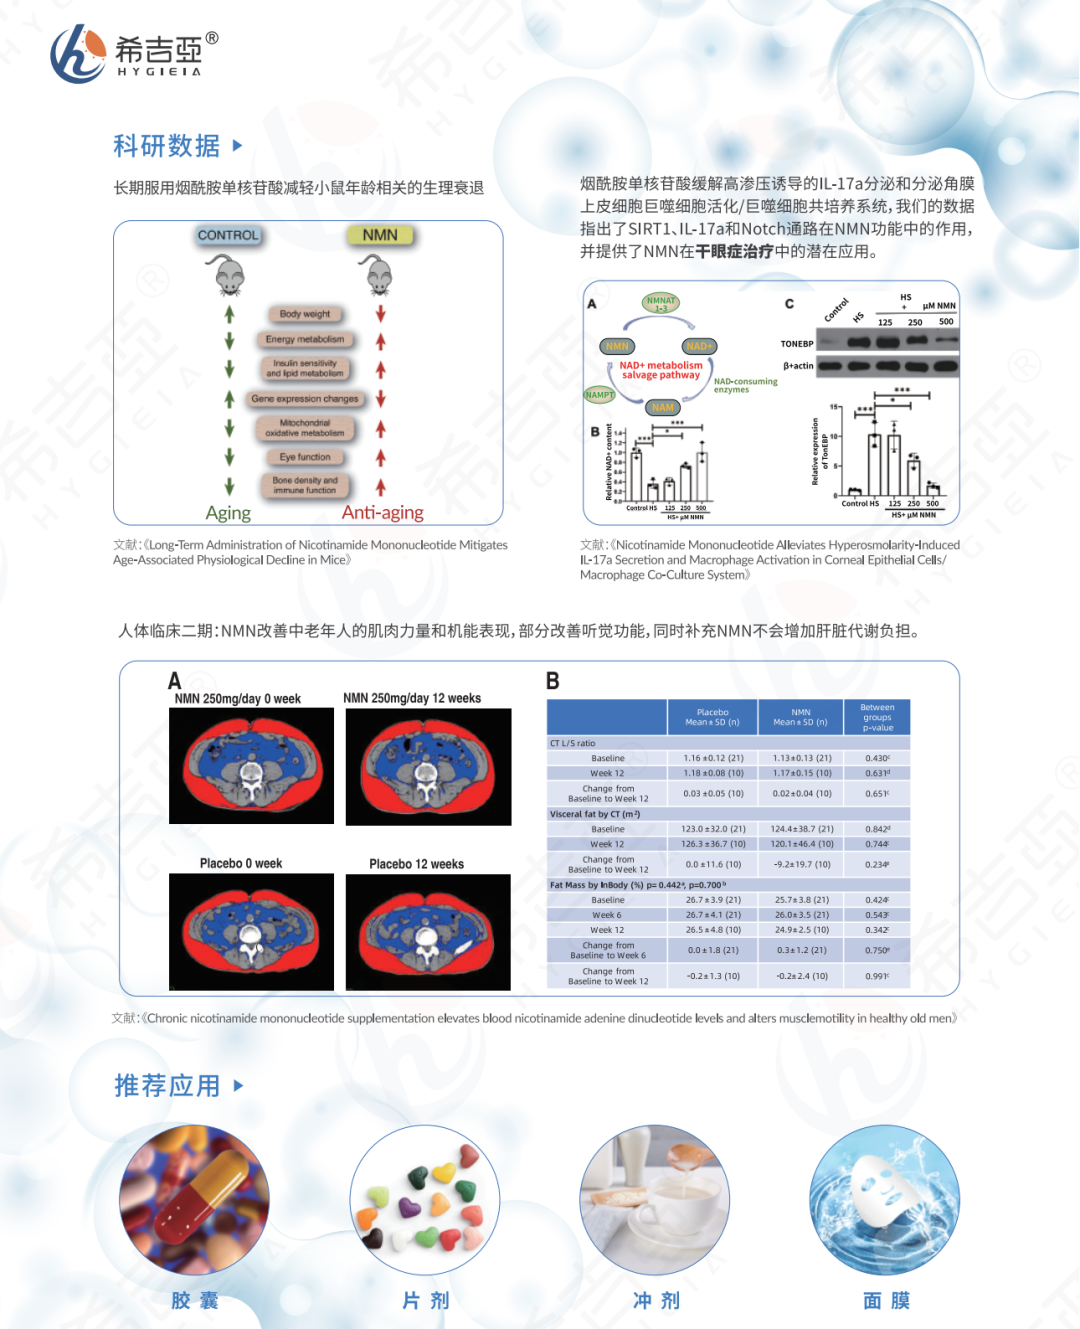 女神节抗衰老特刊——中国首个在三甲医院进行的NMN人体临床试验